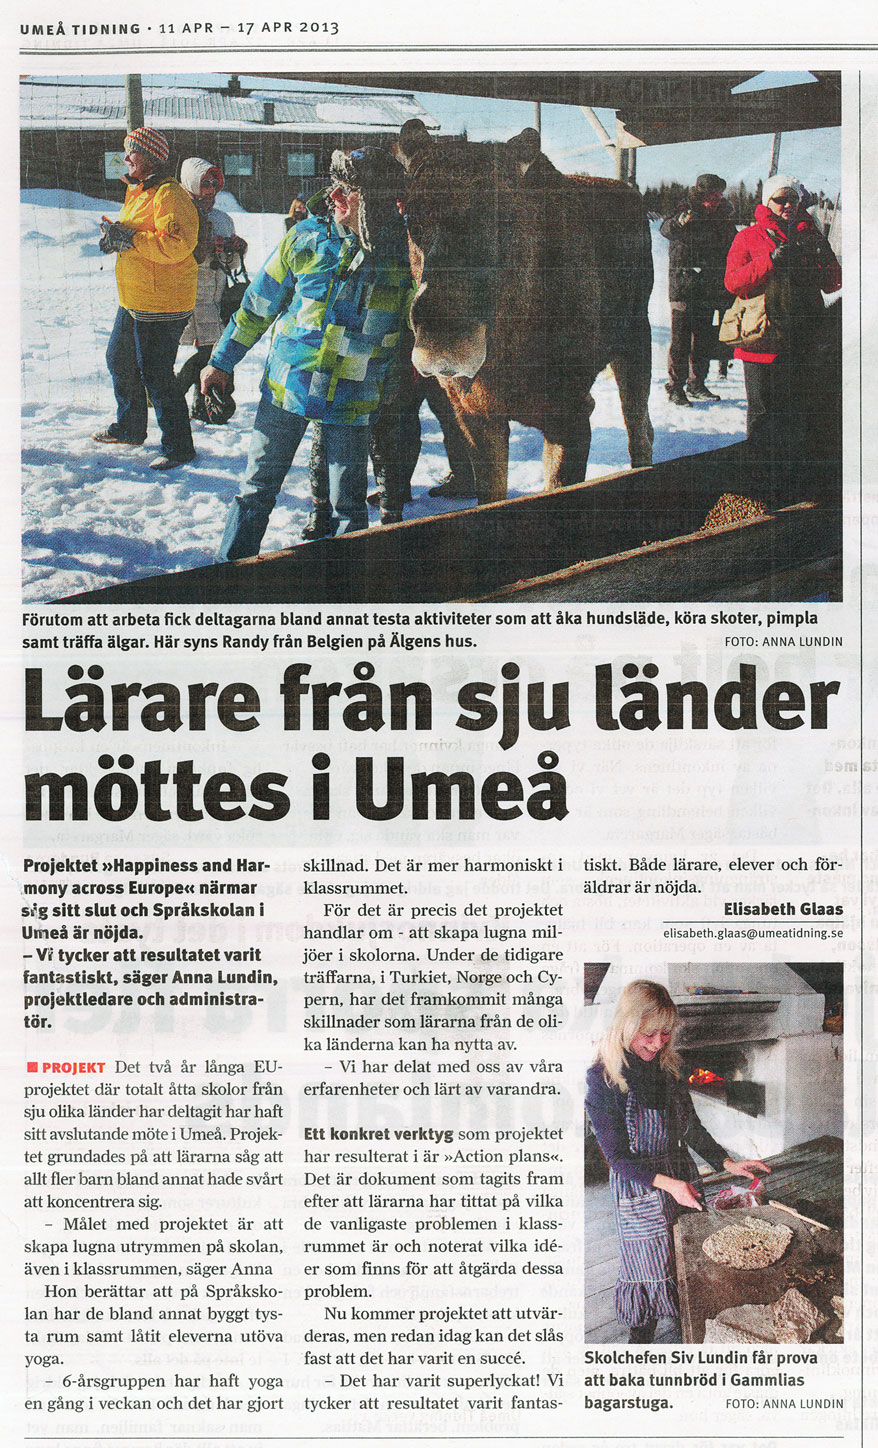 Umeå Tidning 2013-04-11 Lärare från sju länder möttes i Umeå